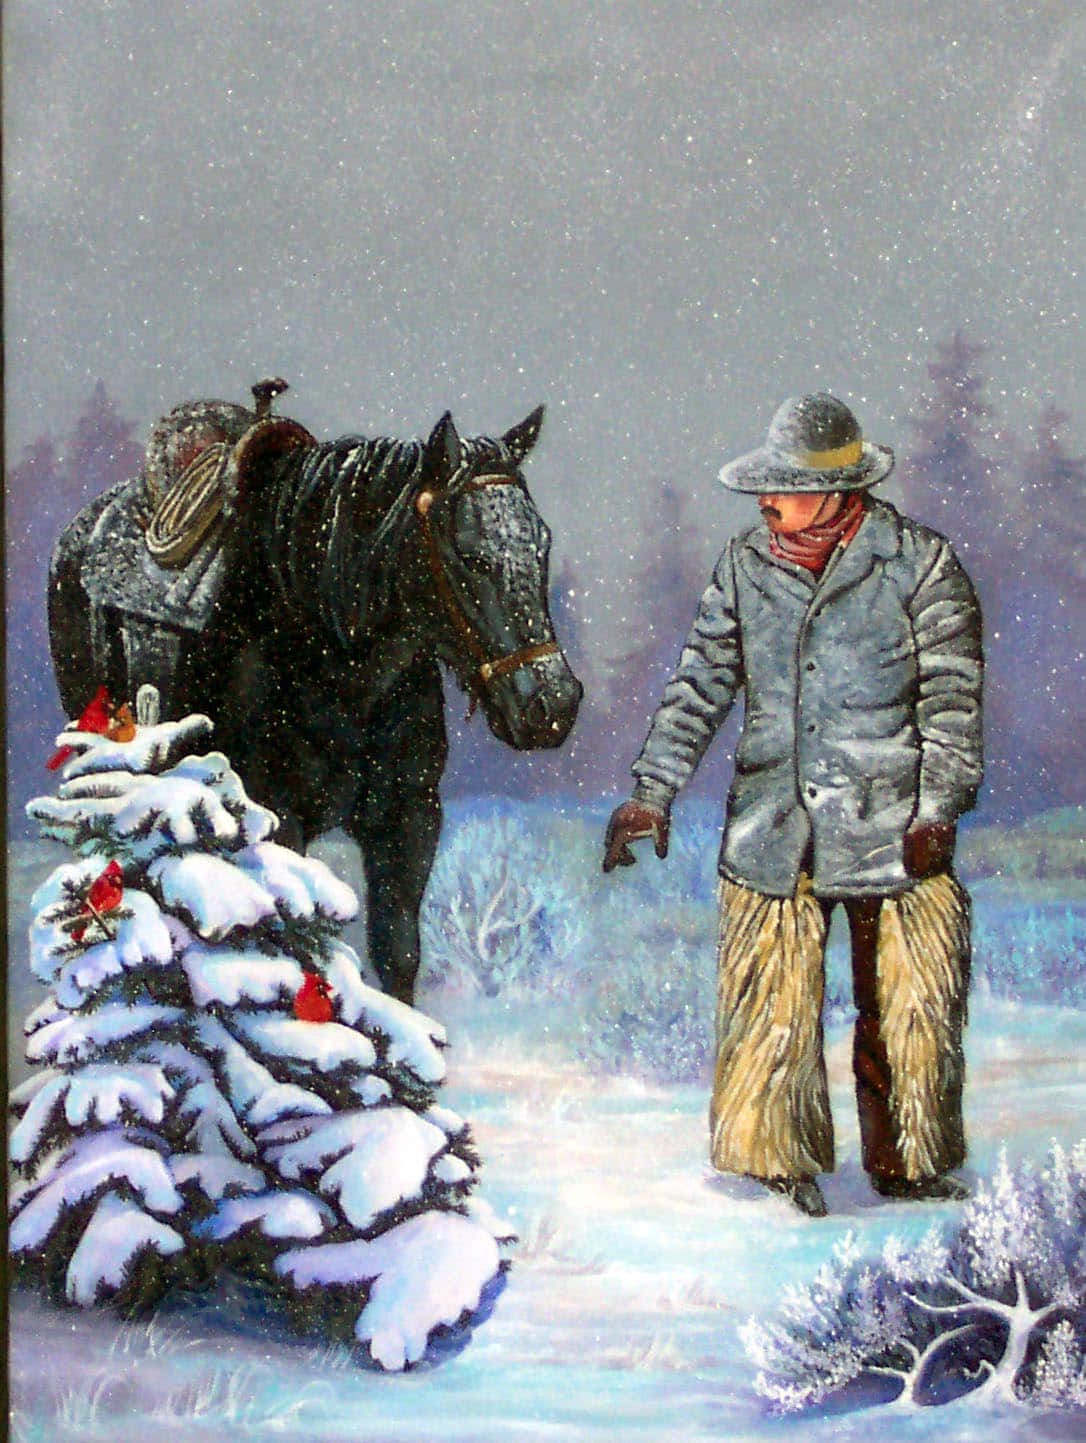 Cowboysom Spenderar En Varm Julaftonsmorgon Hemma. Wallpaper